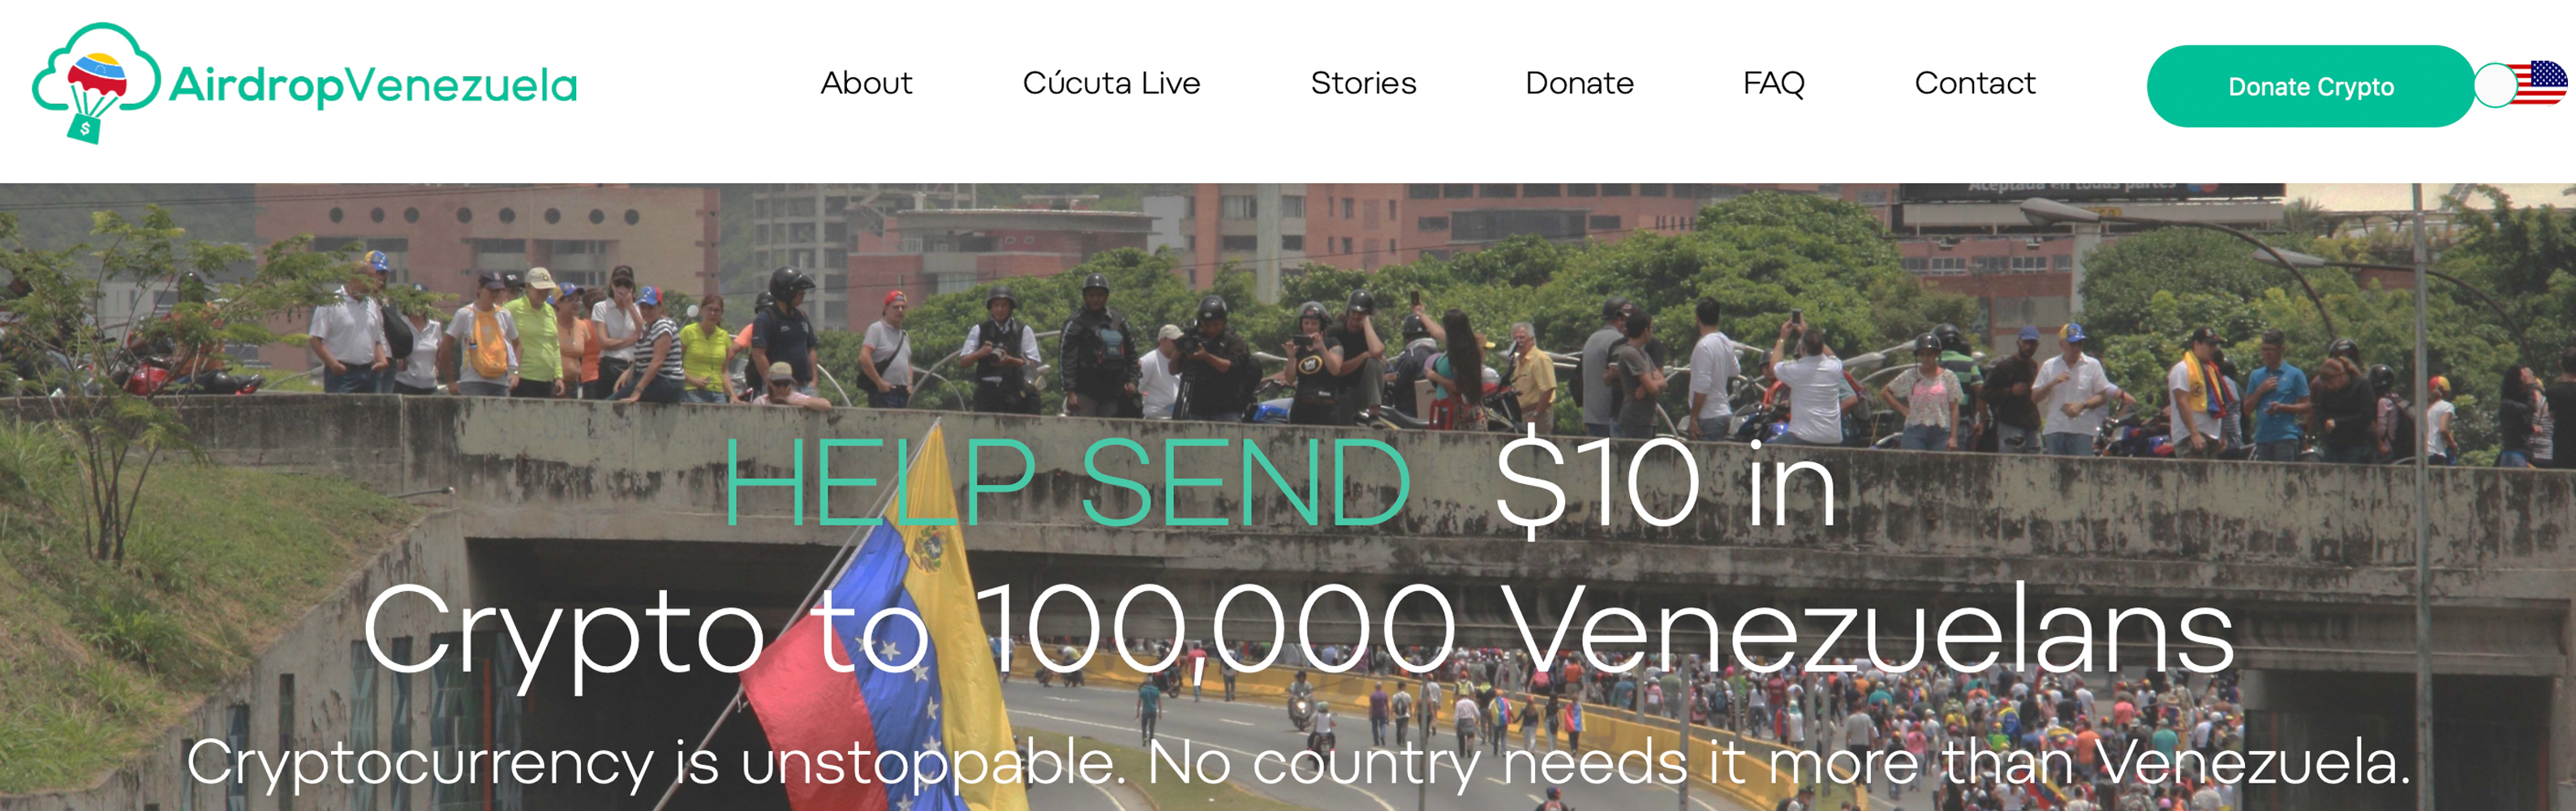 Crypto Charity Airdrop Venezuela získává 292 000 $ - většinou v BCH